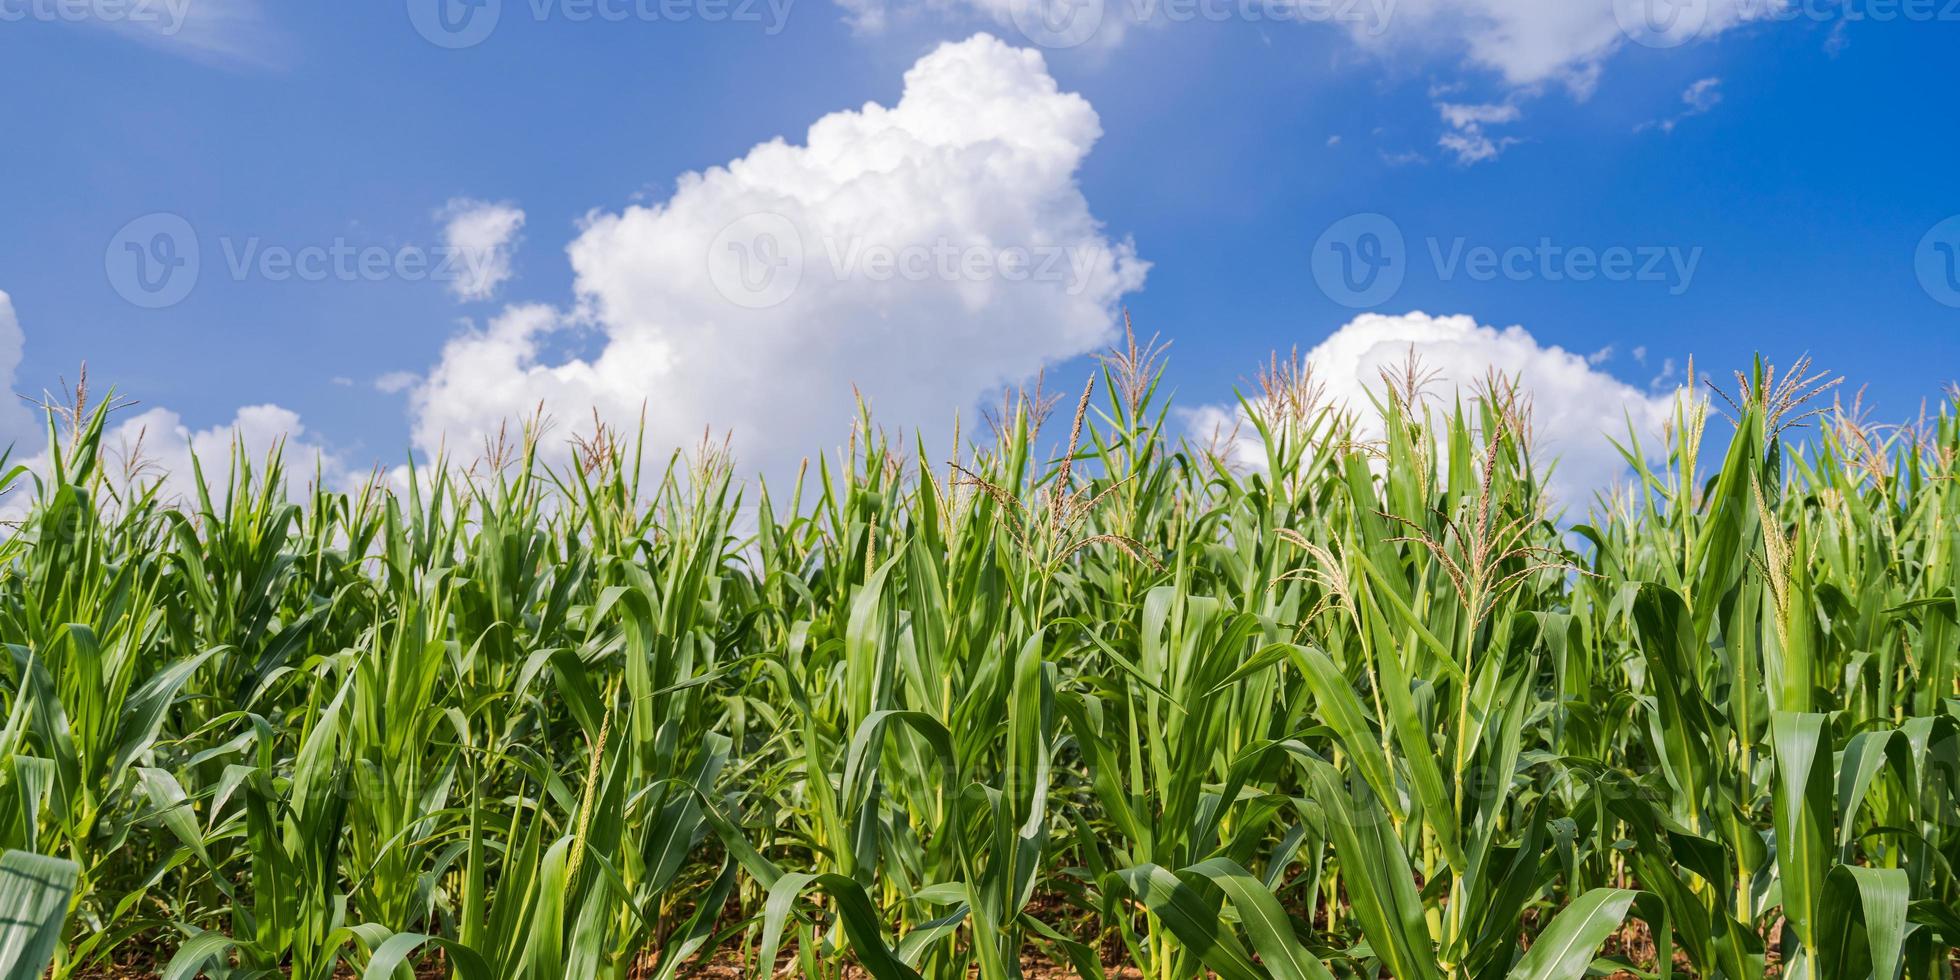 majsfält under den blå himlen foto